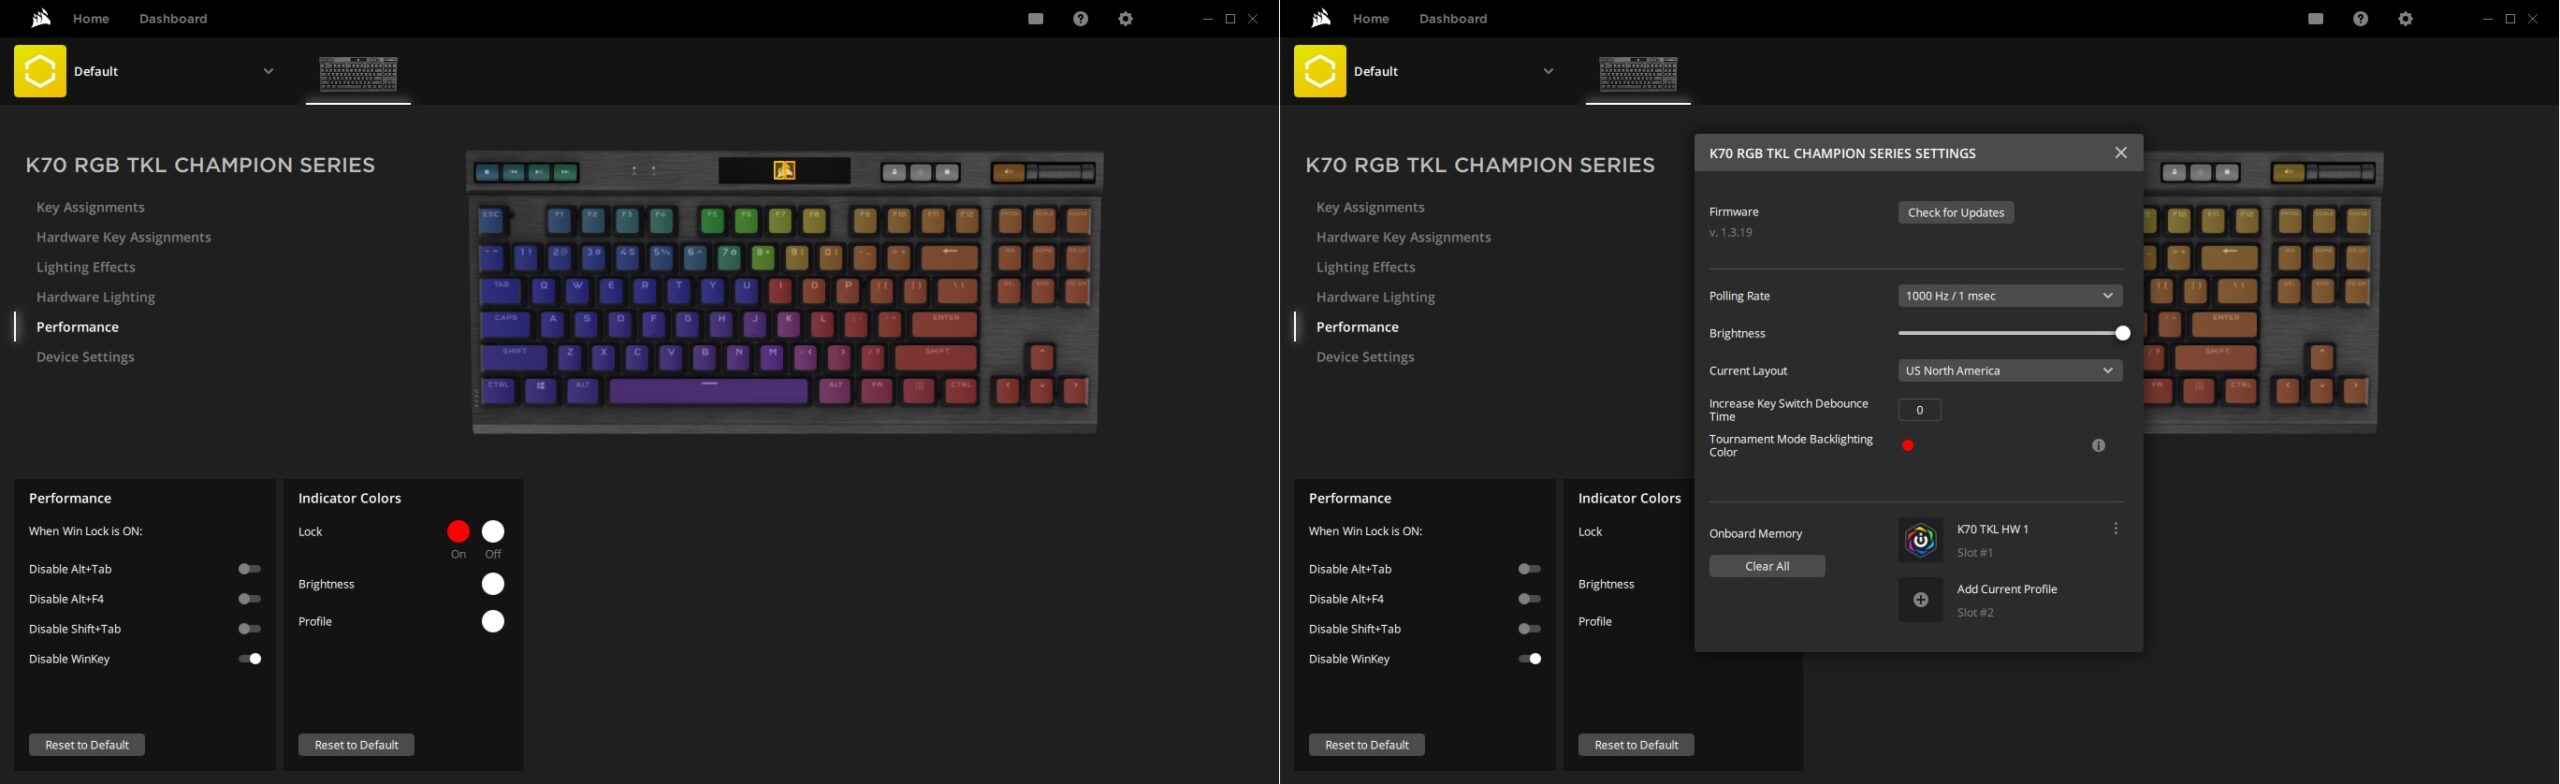 Keyboard Mekanik Seri Corsair K70 RGB TKL Champion